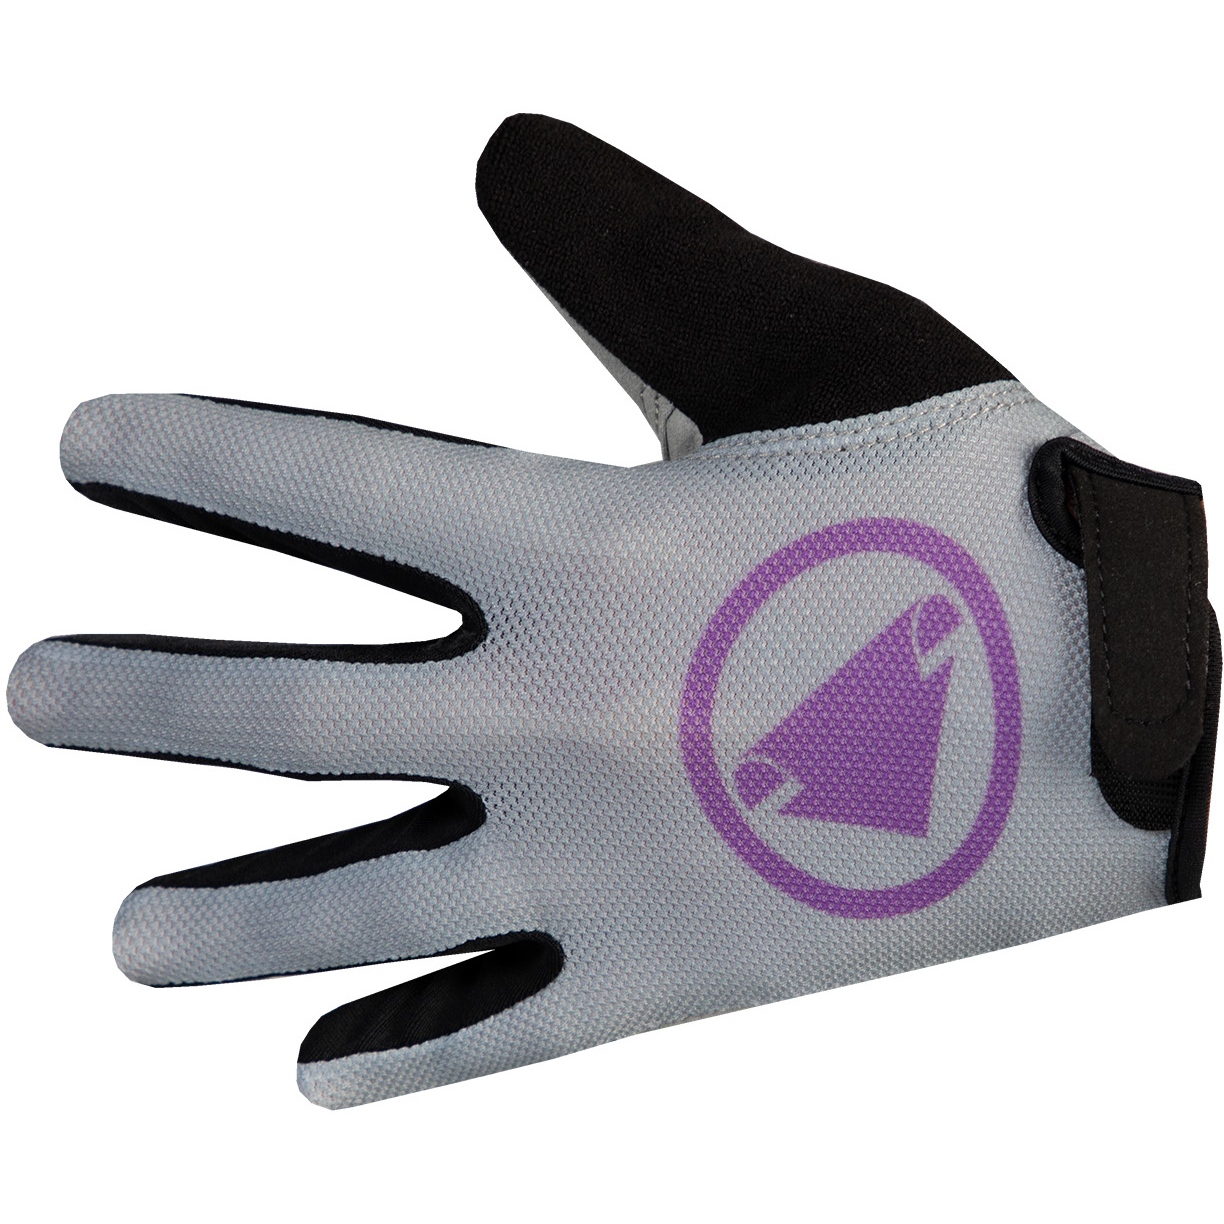 Productfoto van Endura Hummvee Handschoenen Kinder - grijs